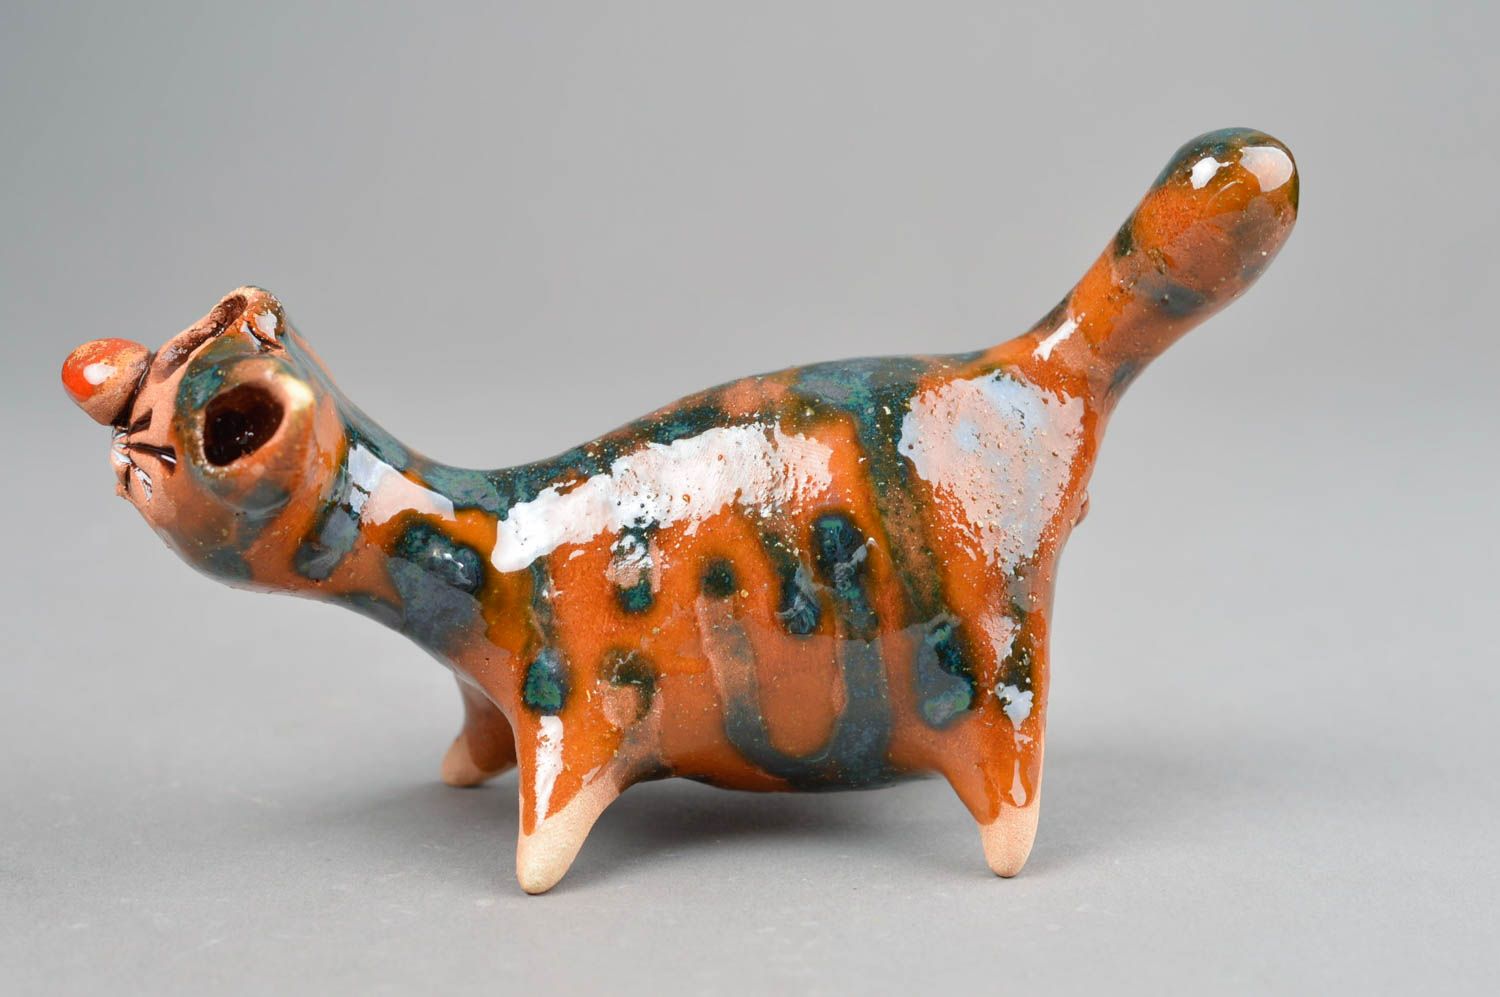 Handmade ceramic figurines ceramic animals cat decor gift ideas for women photo 2